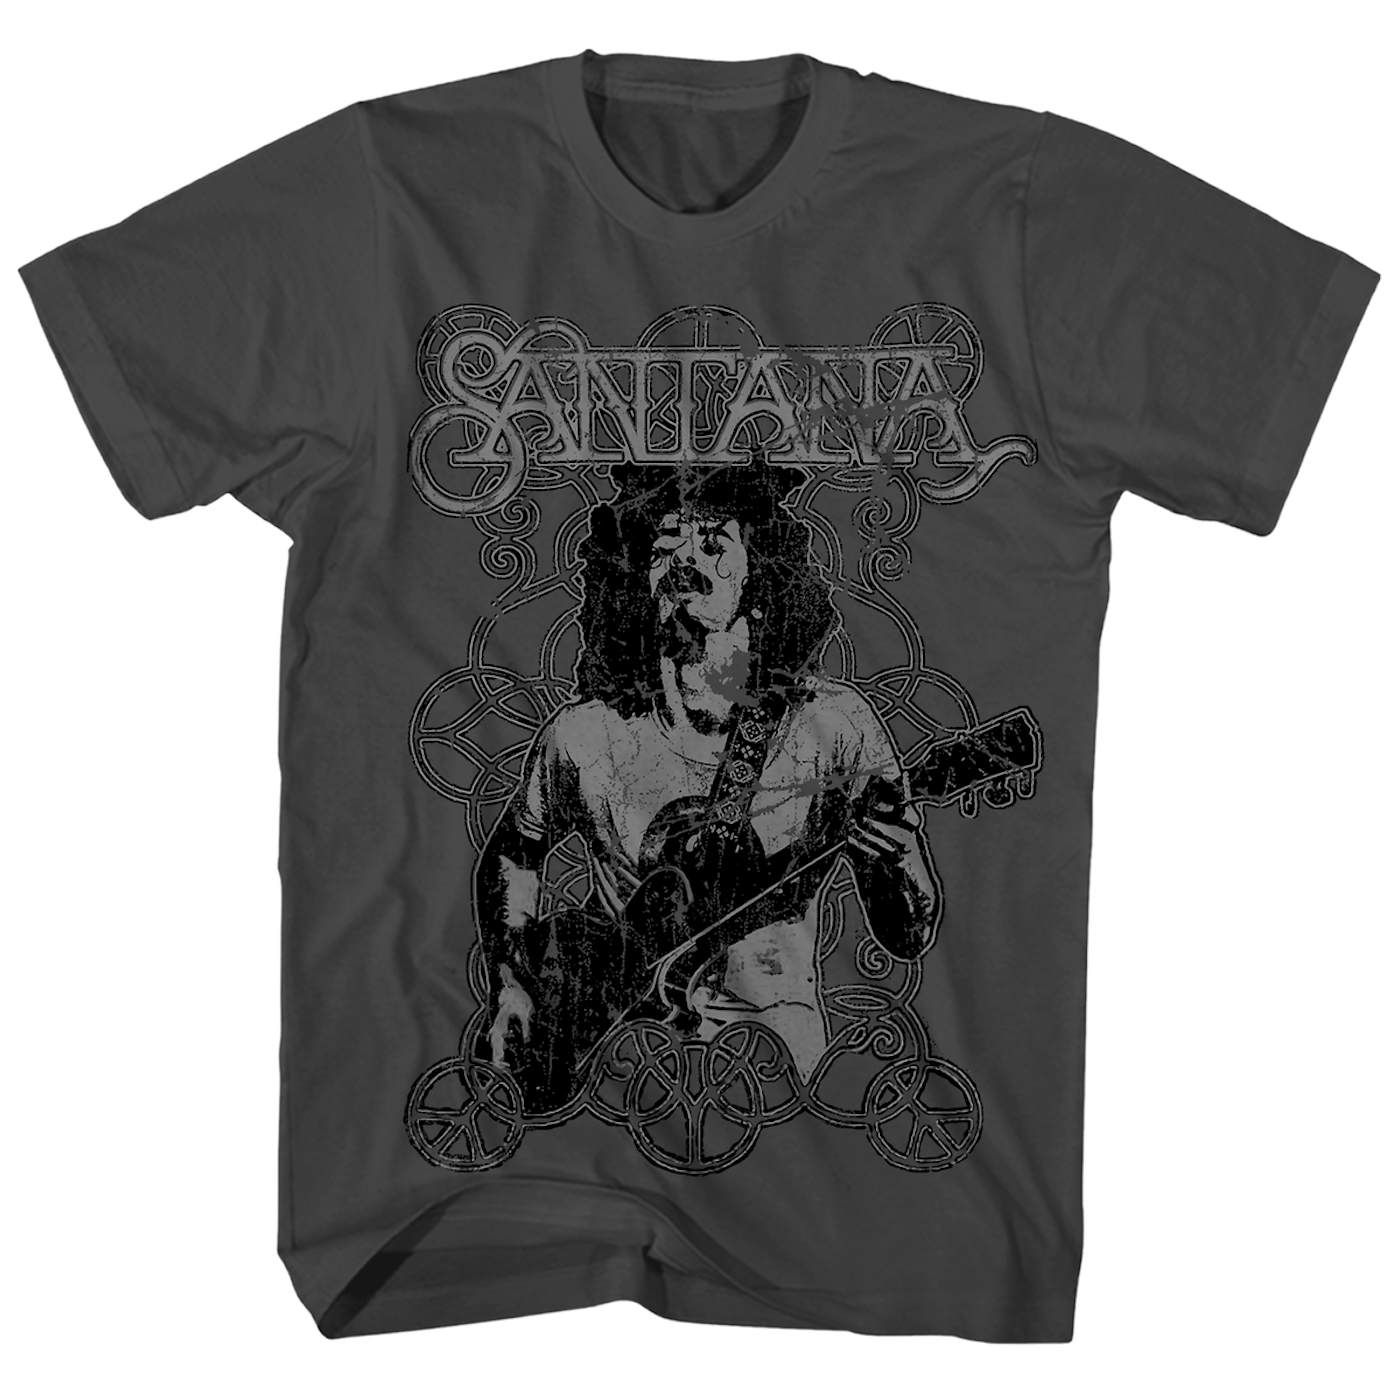 Santana T-Shirt | Vintage Peace Signs Carlos Santana Shirt